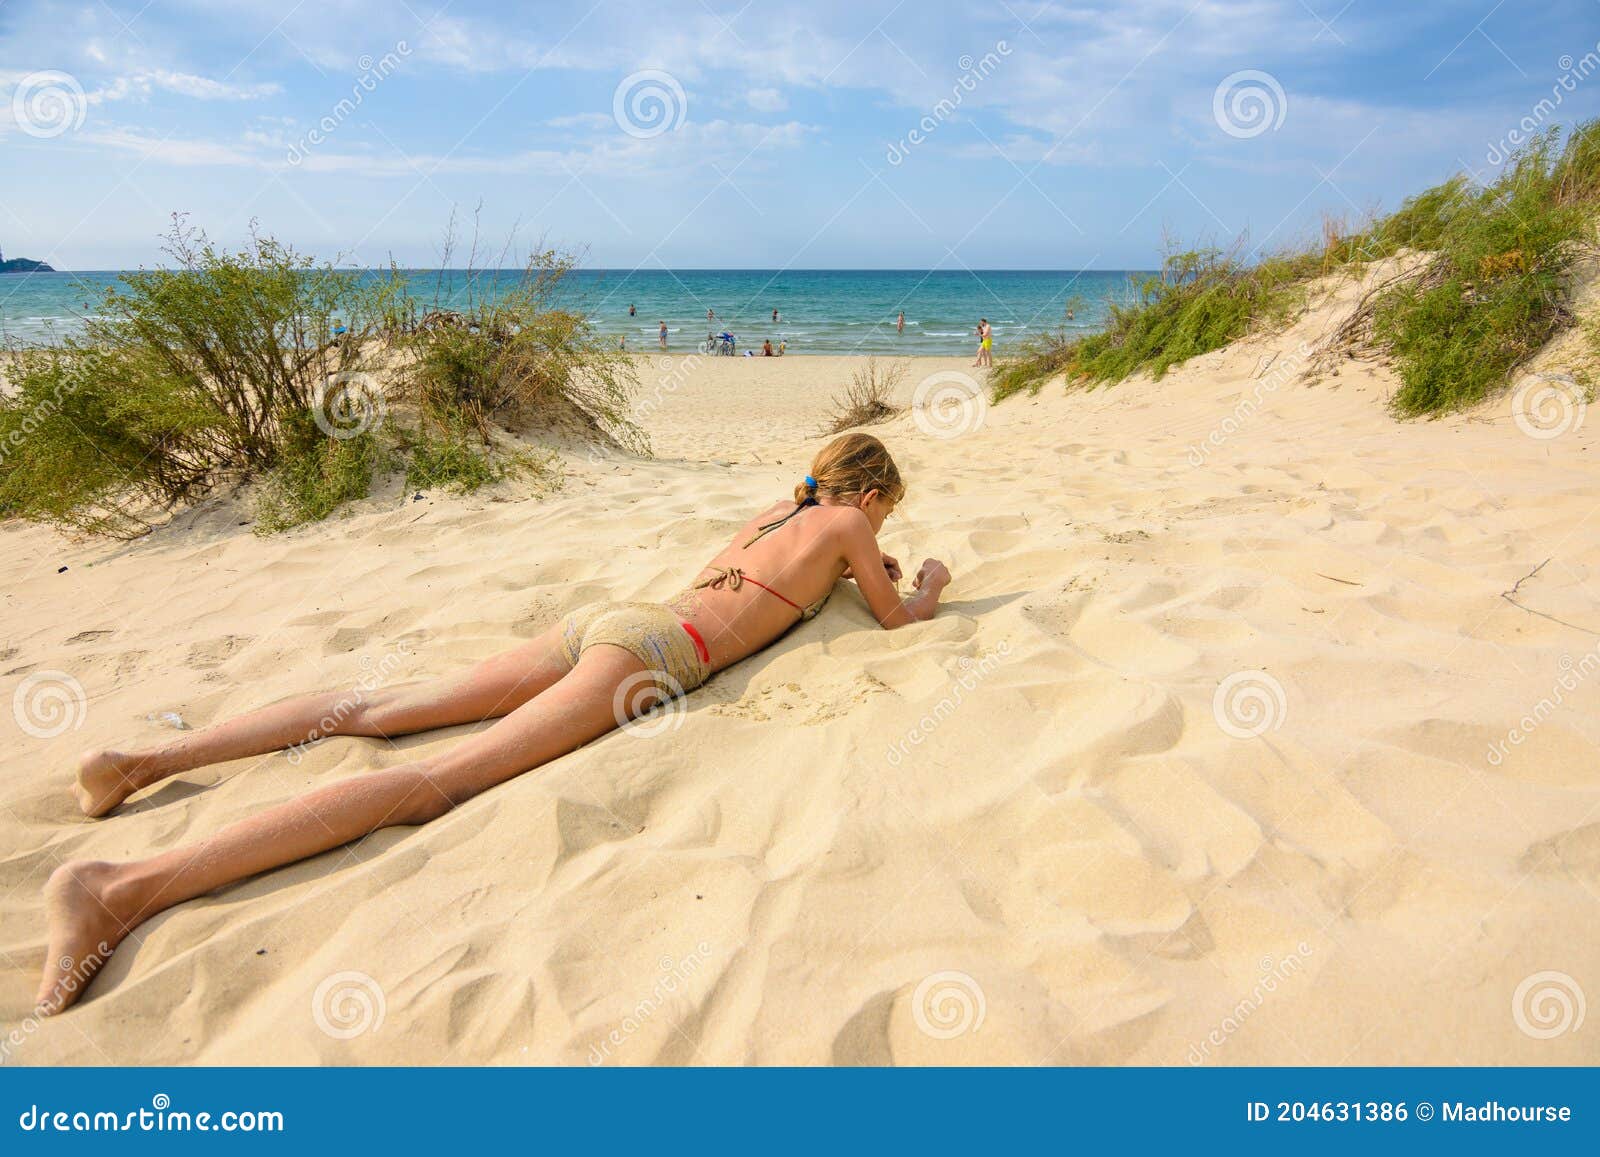 Красивые Девушки На Диком Пляже Фото